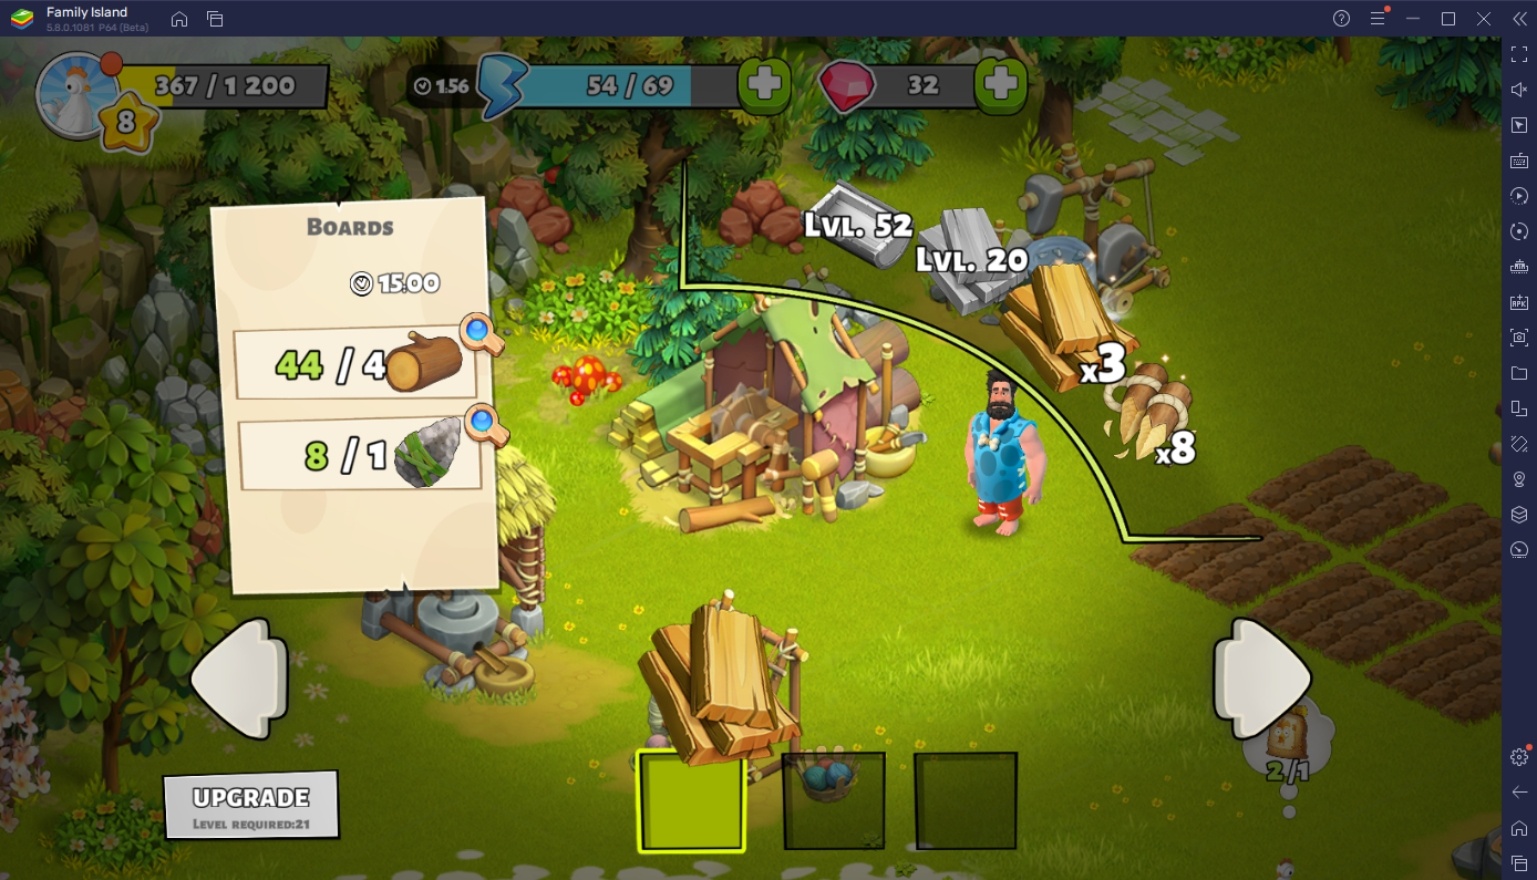 أسرع طريقة للوصول إلى المستوى الأعلى في Family Island -  Farming game